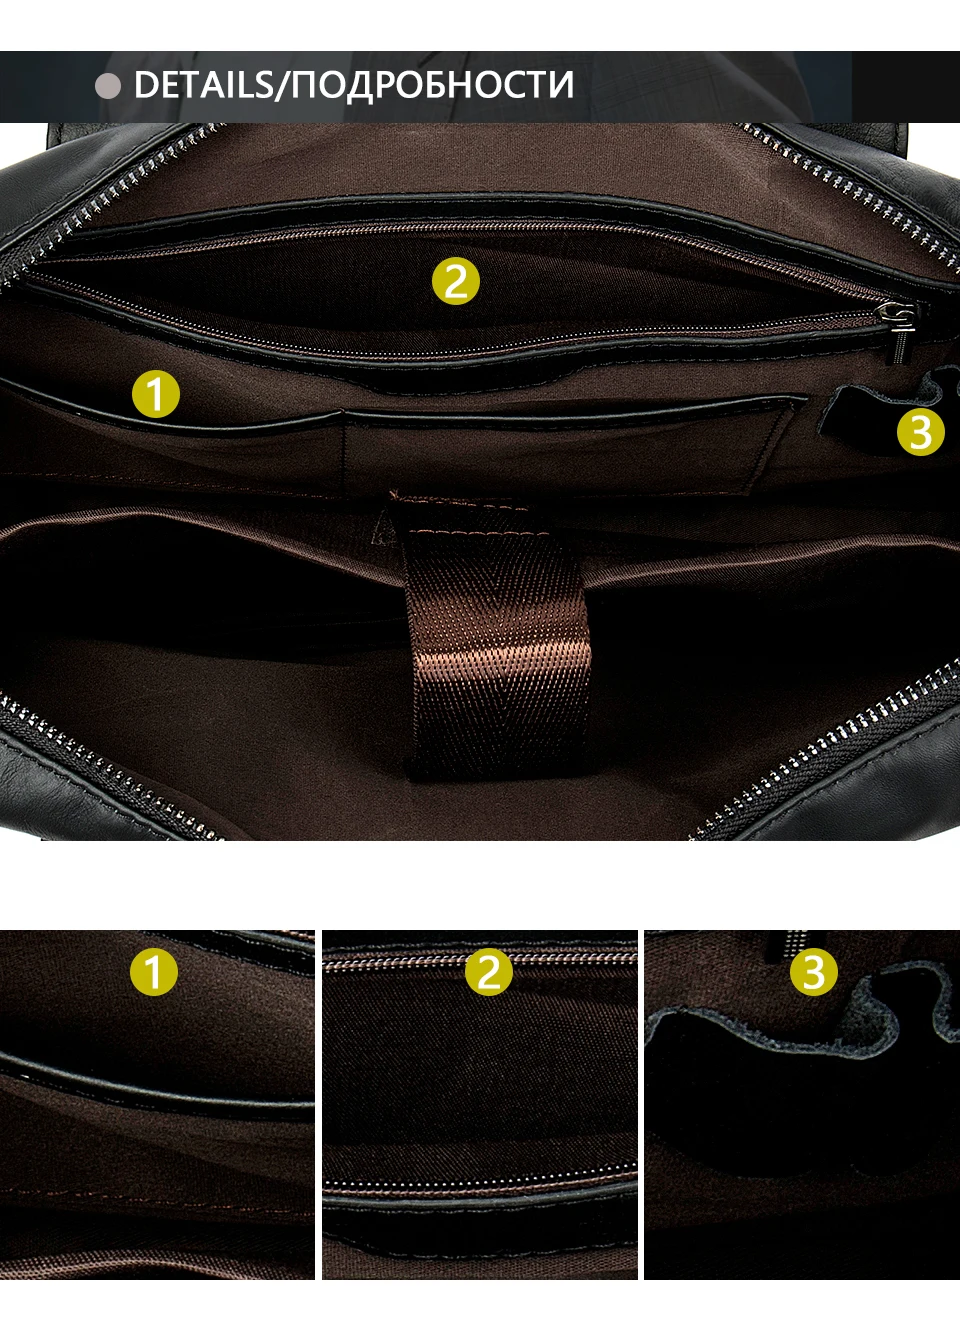 Mva сумка-мессенджер мужские кожаные сумки из натуральной кожи на плечо/сумки через плечо сумка для ноутбука бизнес мужской портфель сумки